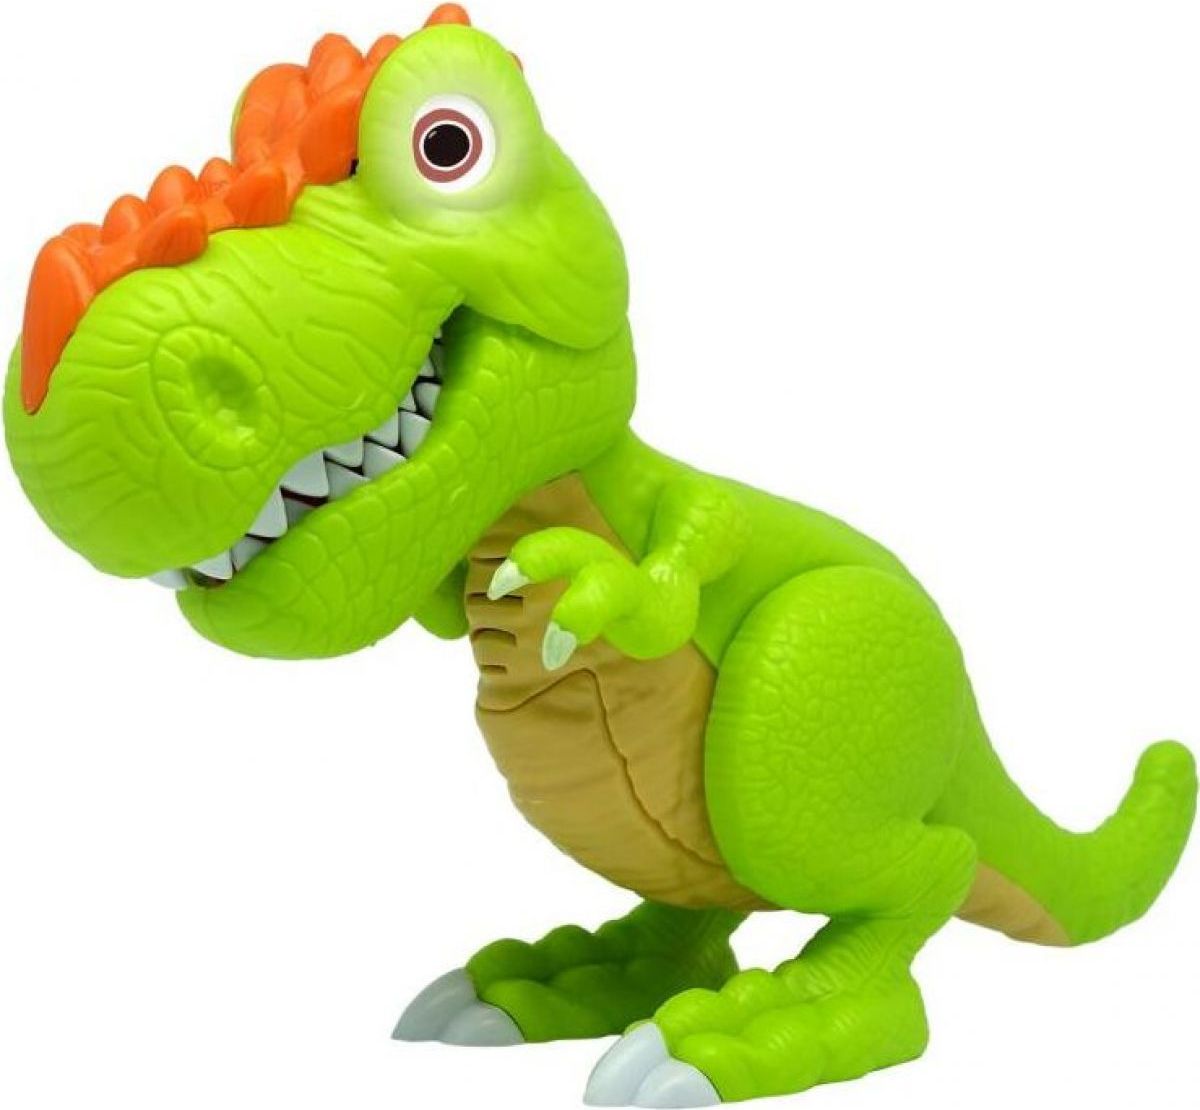 Junior Megasaur ohebný a kousací T-Rex zelený - obrázek 1